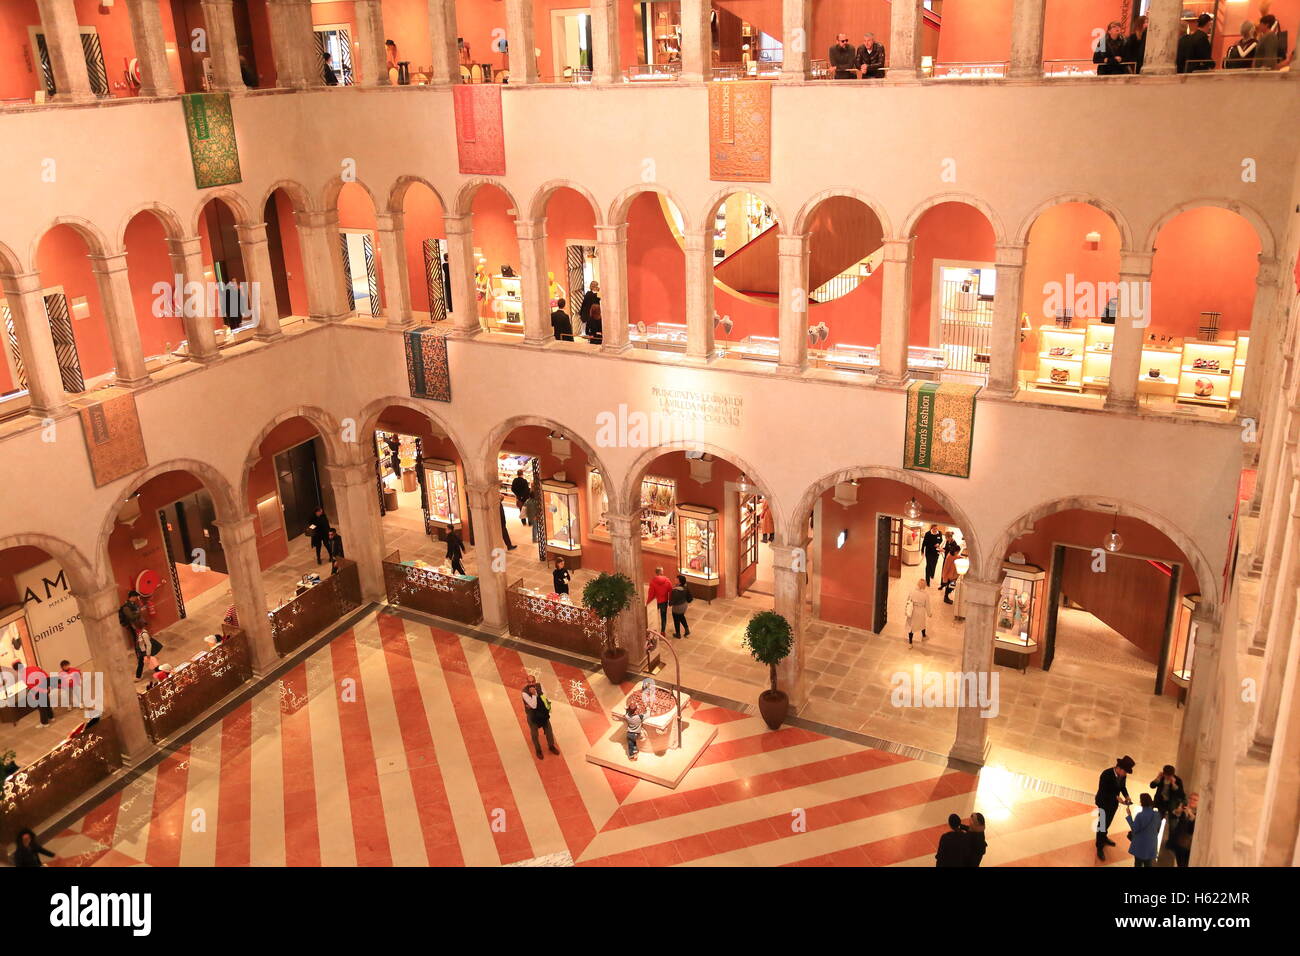 The luxury shopping center Fondaco dei Tedeschi in Venice. Stock Photo